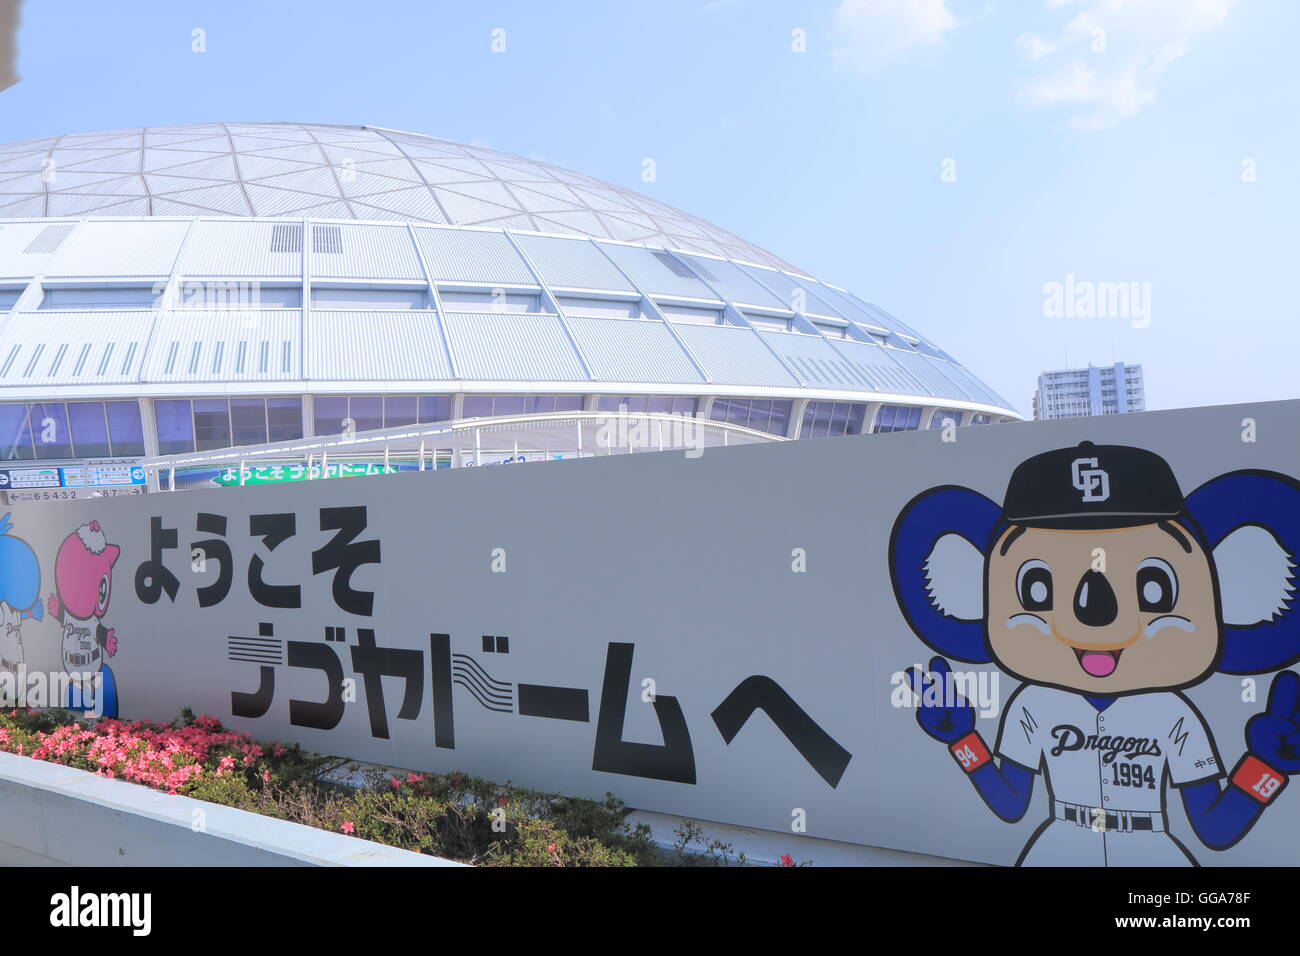 Stade de baseball en dortoir Nagoya Nagoya au Japon. Banque D'Images